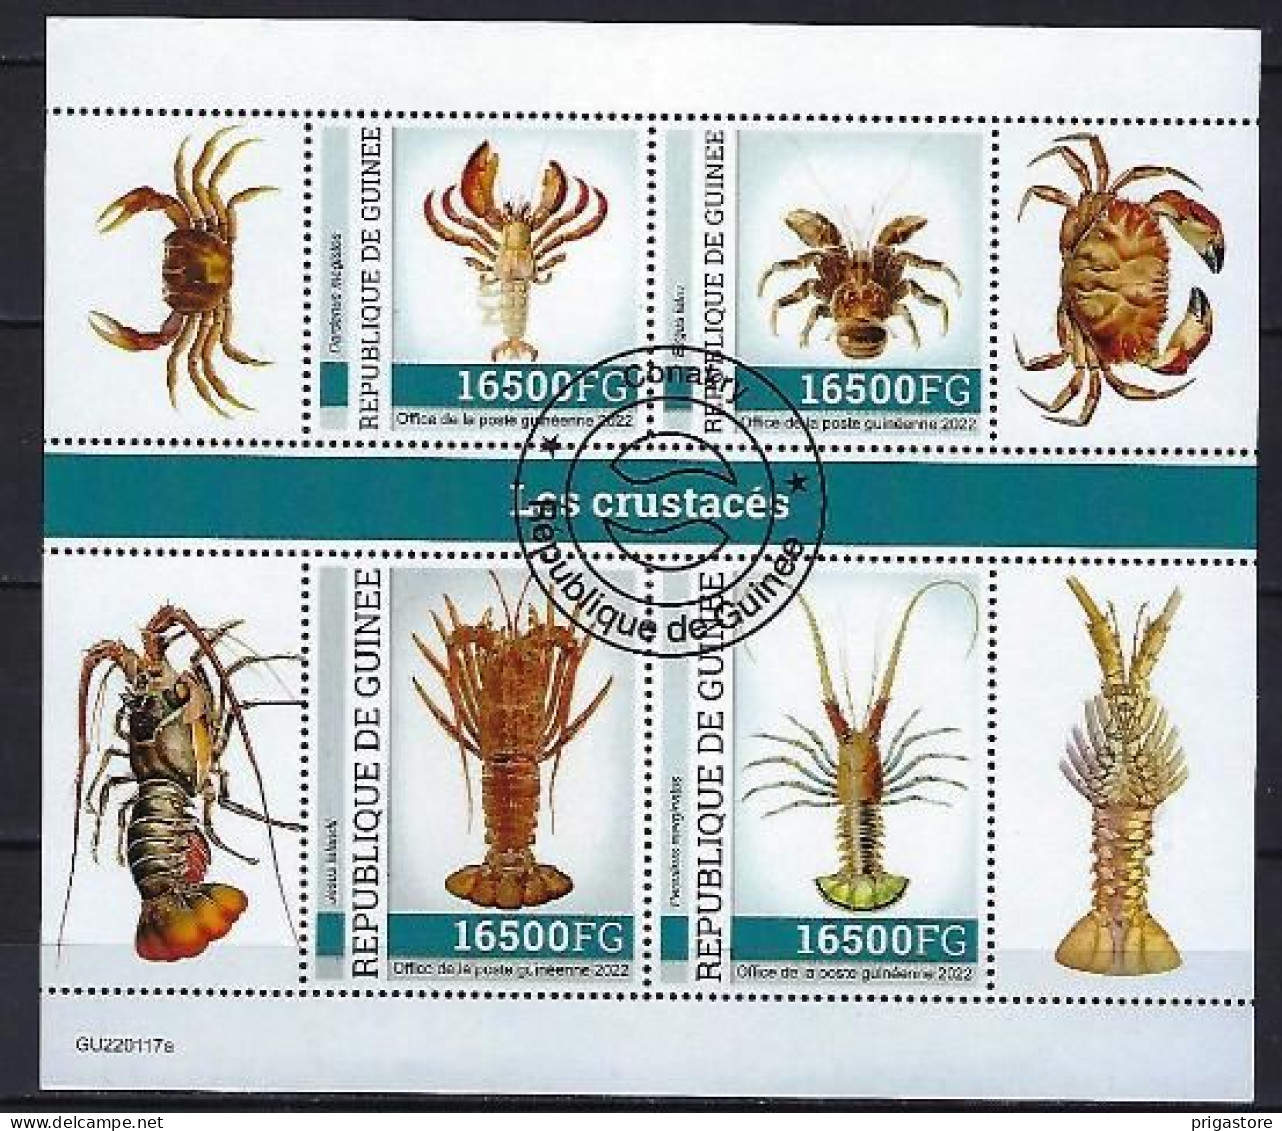 Animaux Crustacés Guinée 2022 (395) Yvert N° 11593 à 11596 Oblitérés Used - Crustacés